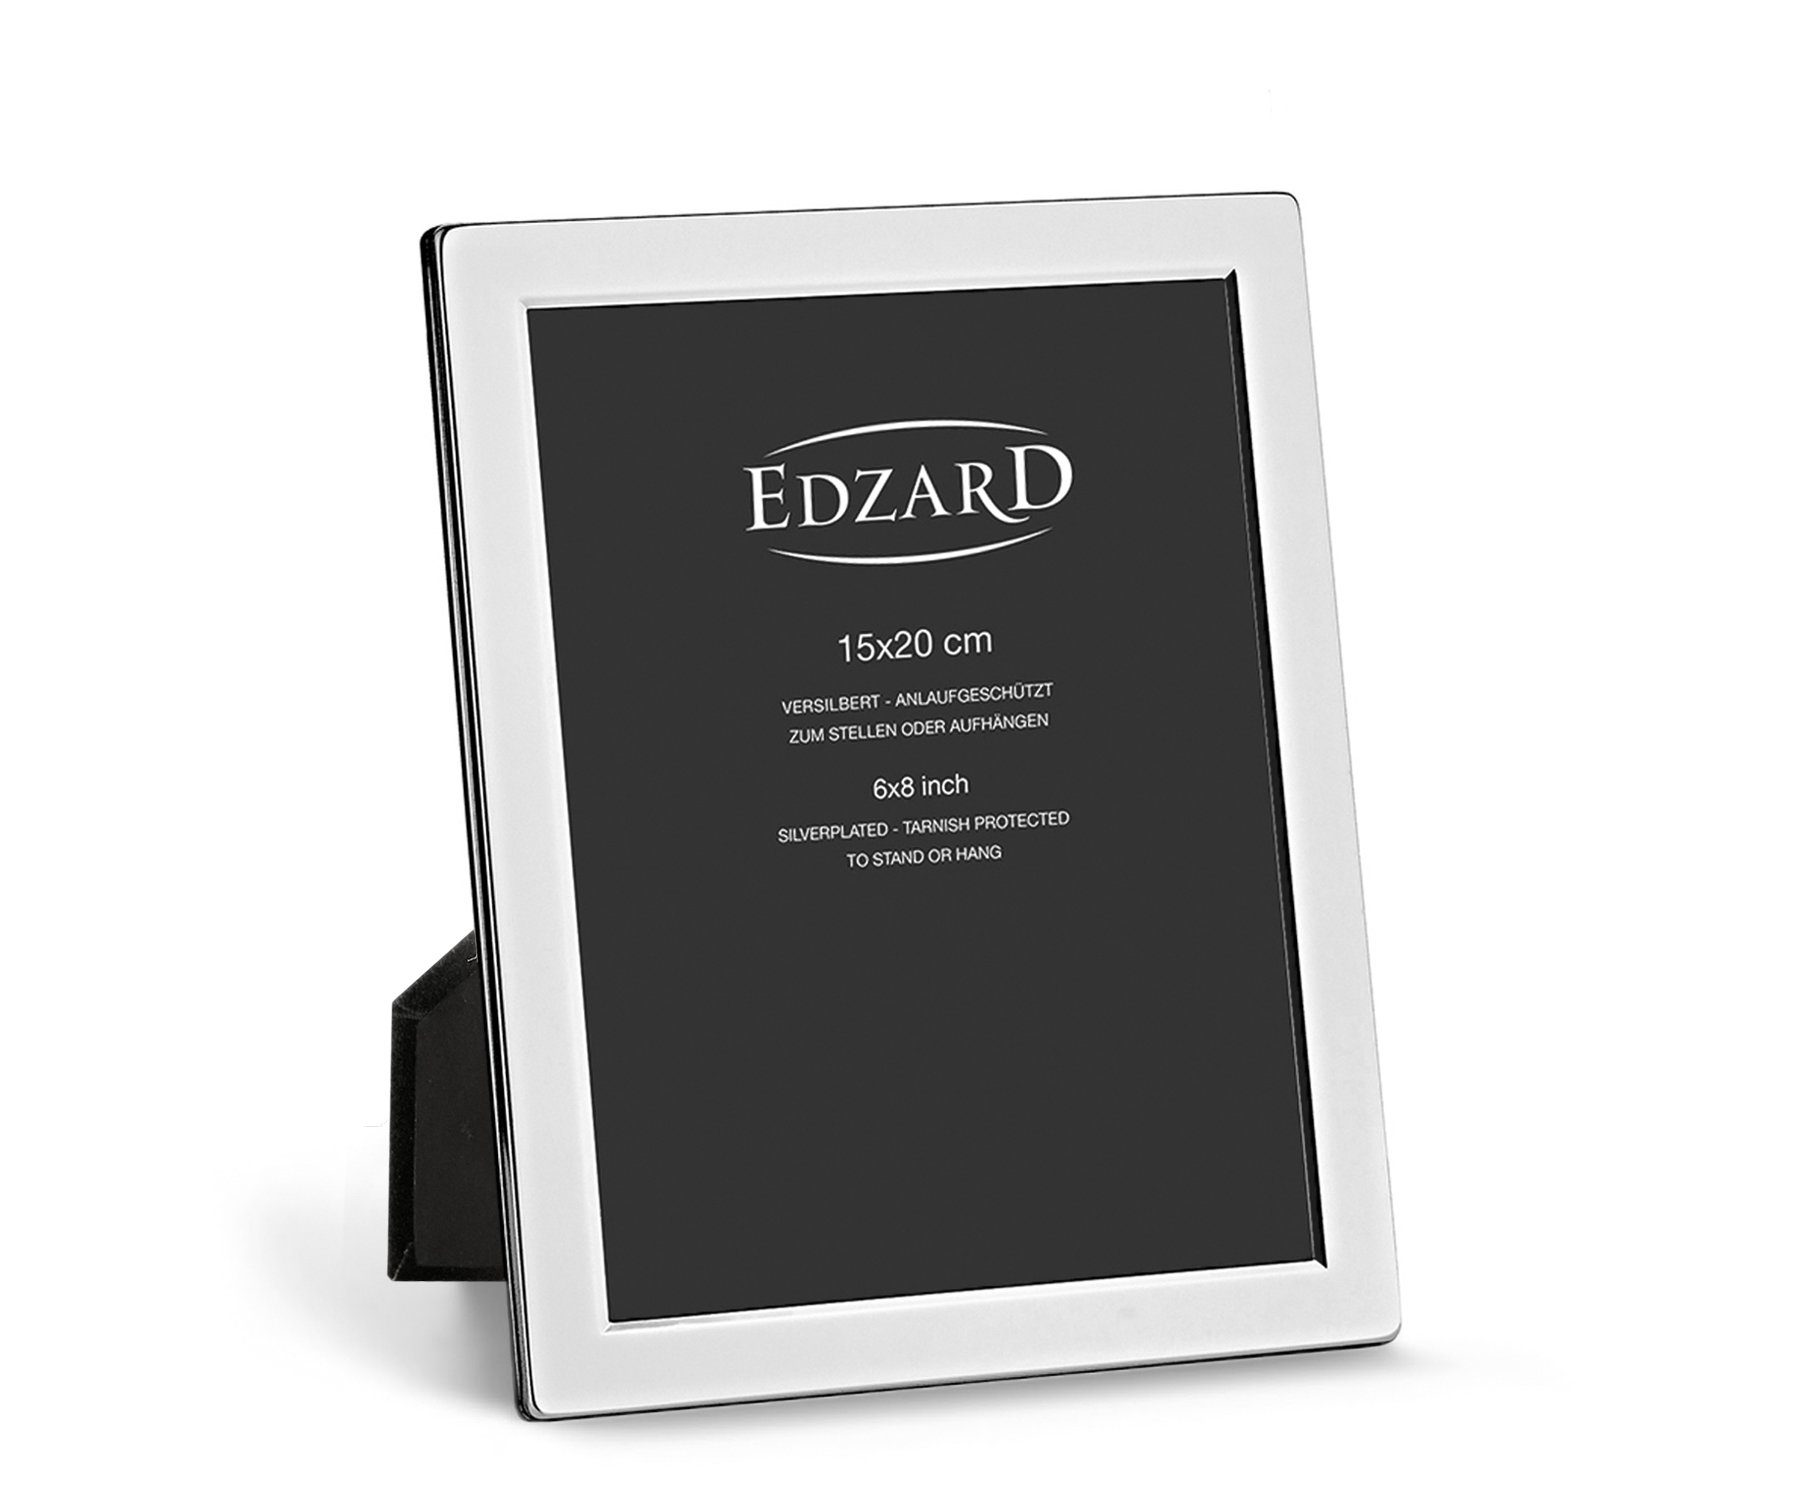 EDZARD Bilderrahmen Salerno, versilbert und anlaufgeschützt, für 15x20 cm Foto